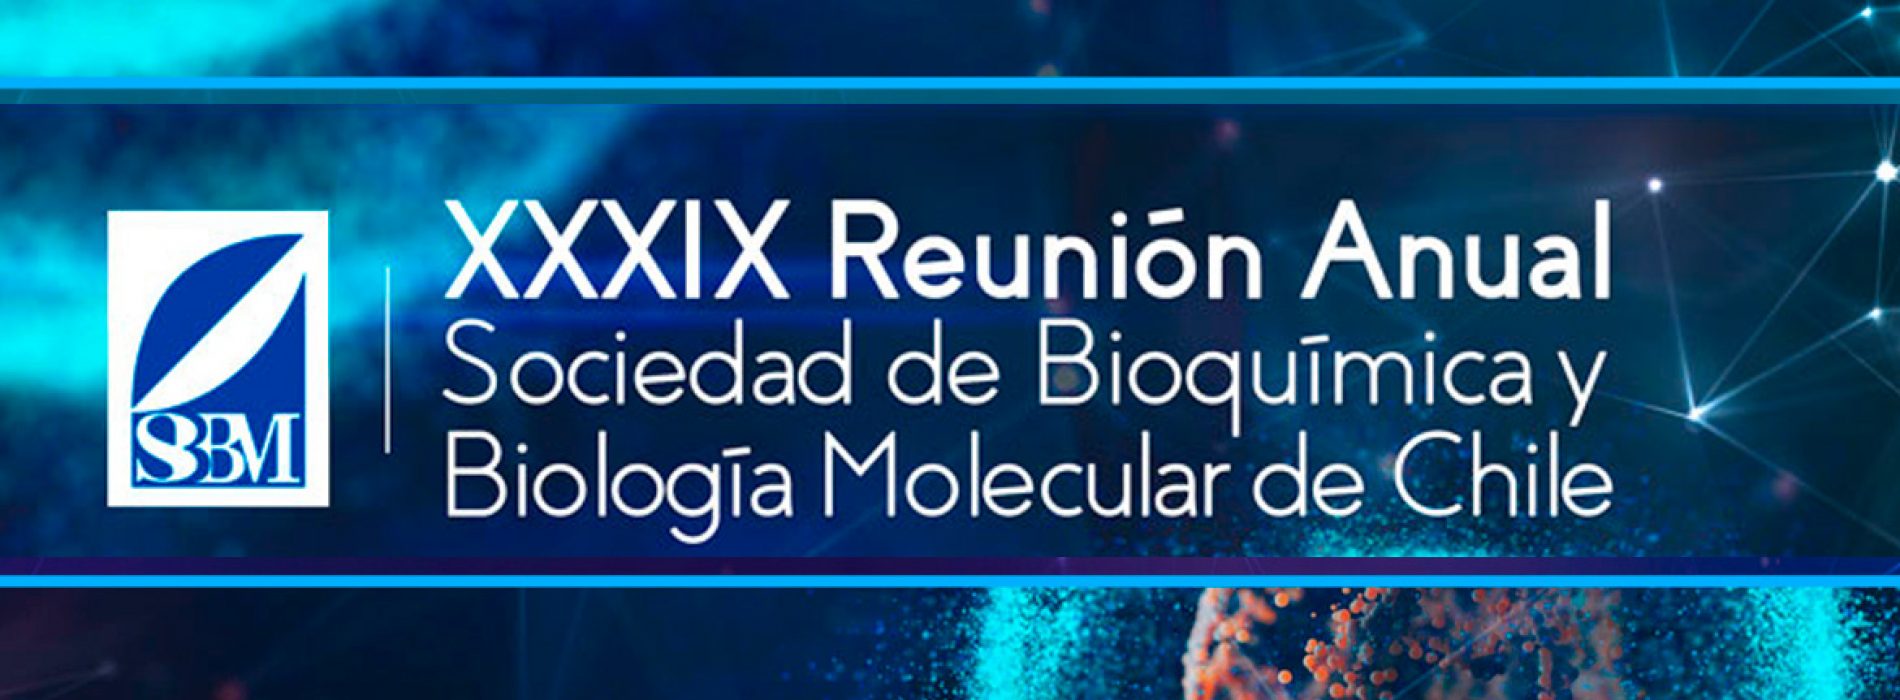 IMPORTANTE: últimos días para inscripción rebajada al congreso de Bioquímica y Biología Molecular 2016